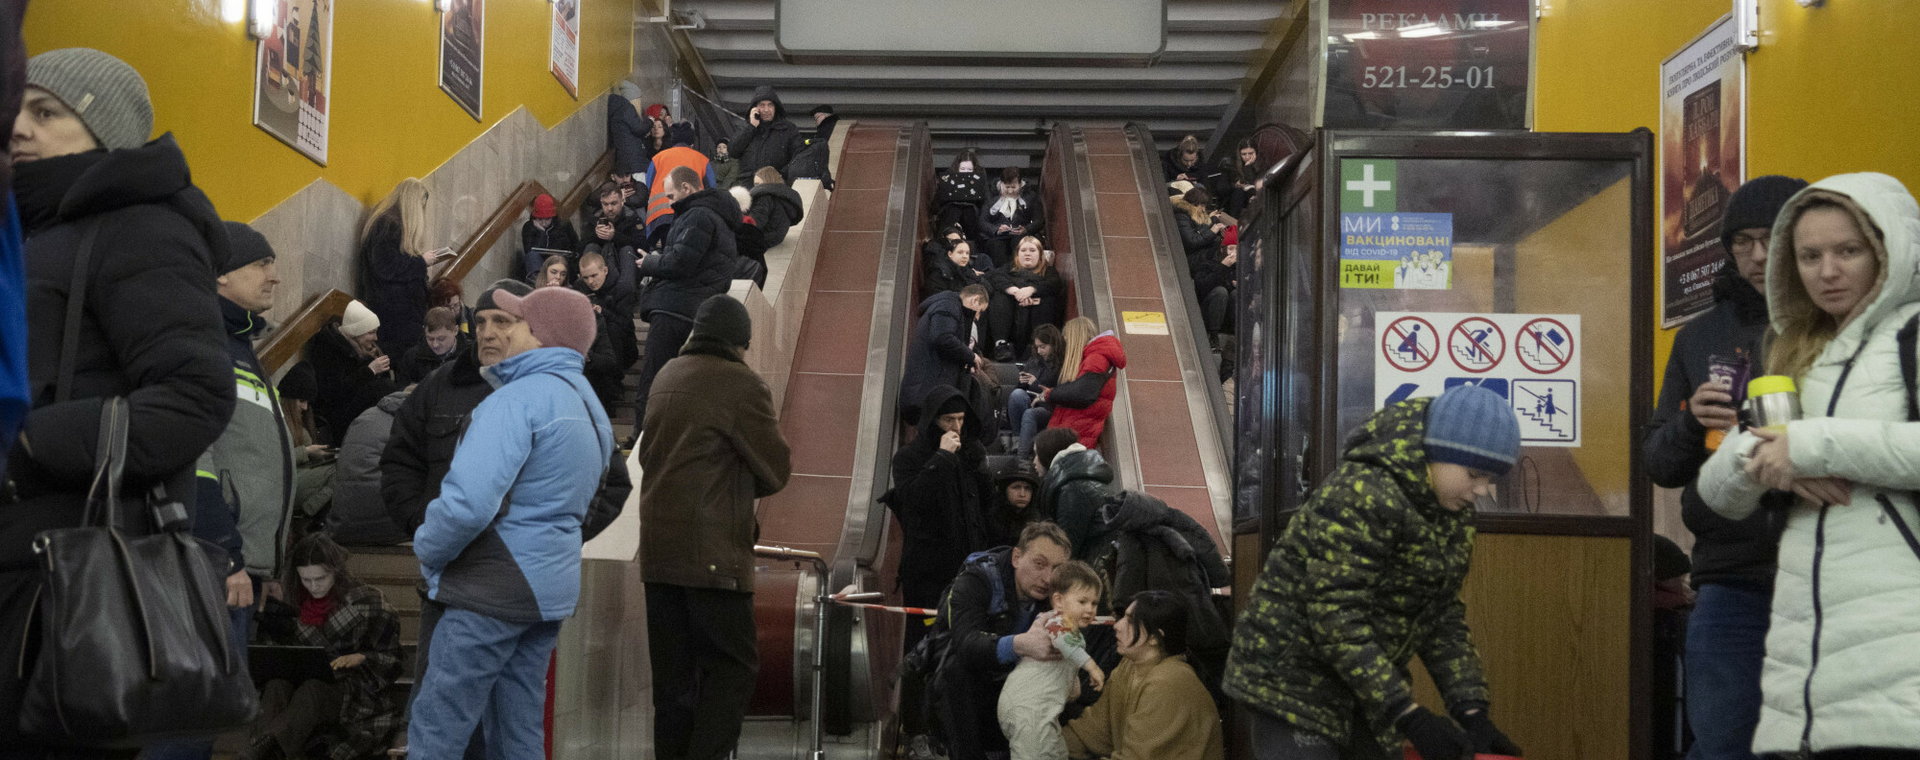 Ludzie schronieni w kijowskim metrze w czasie alarmu bombowego